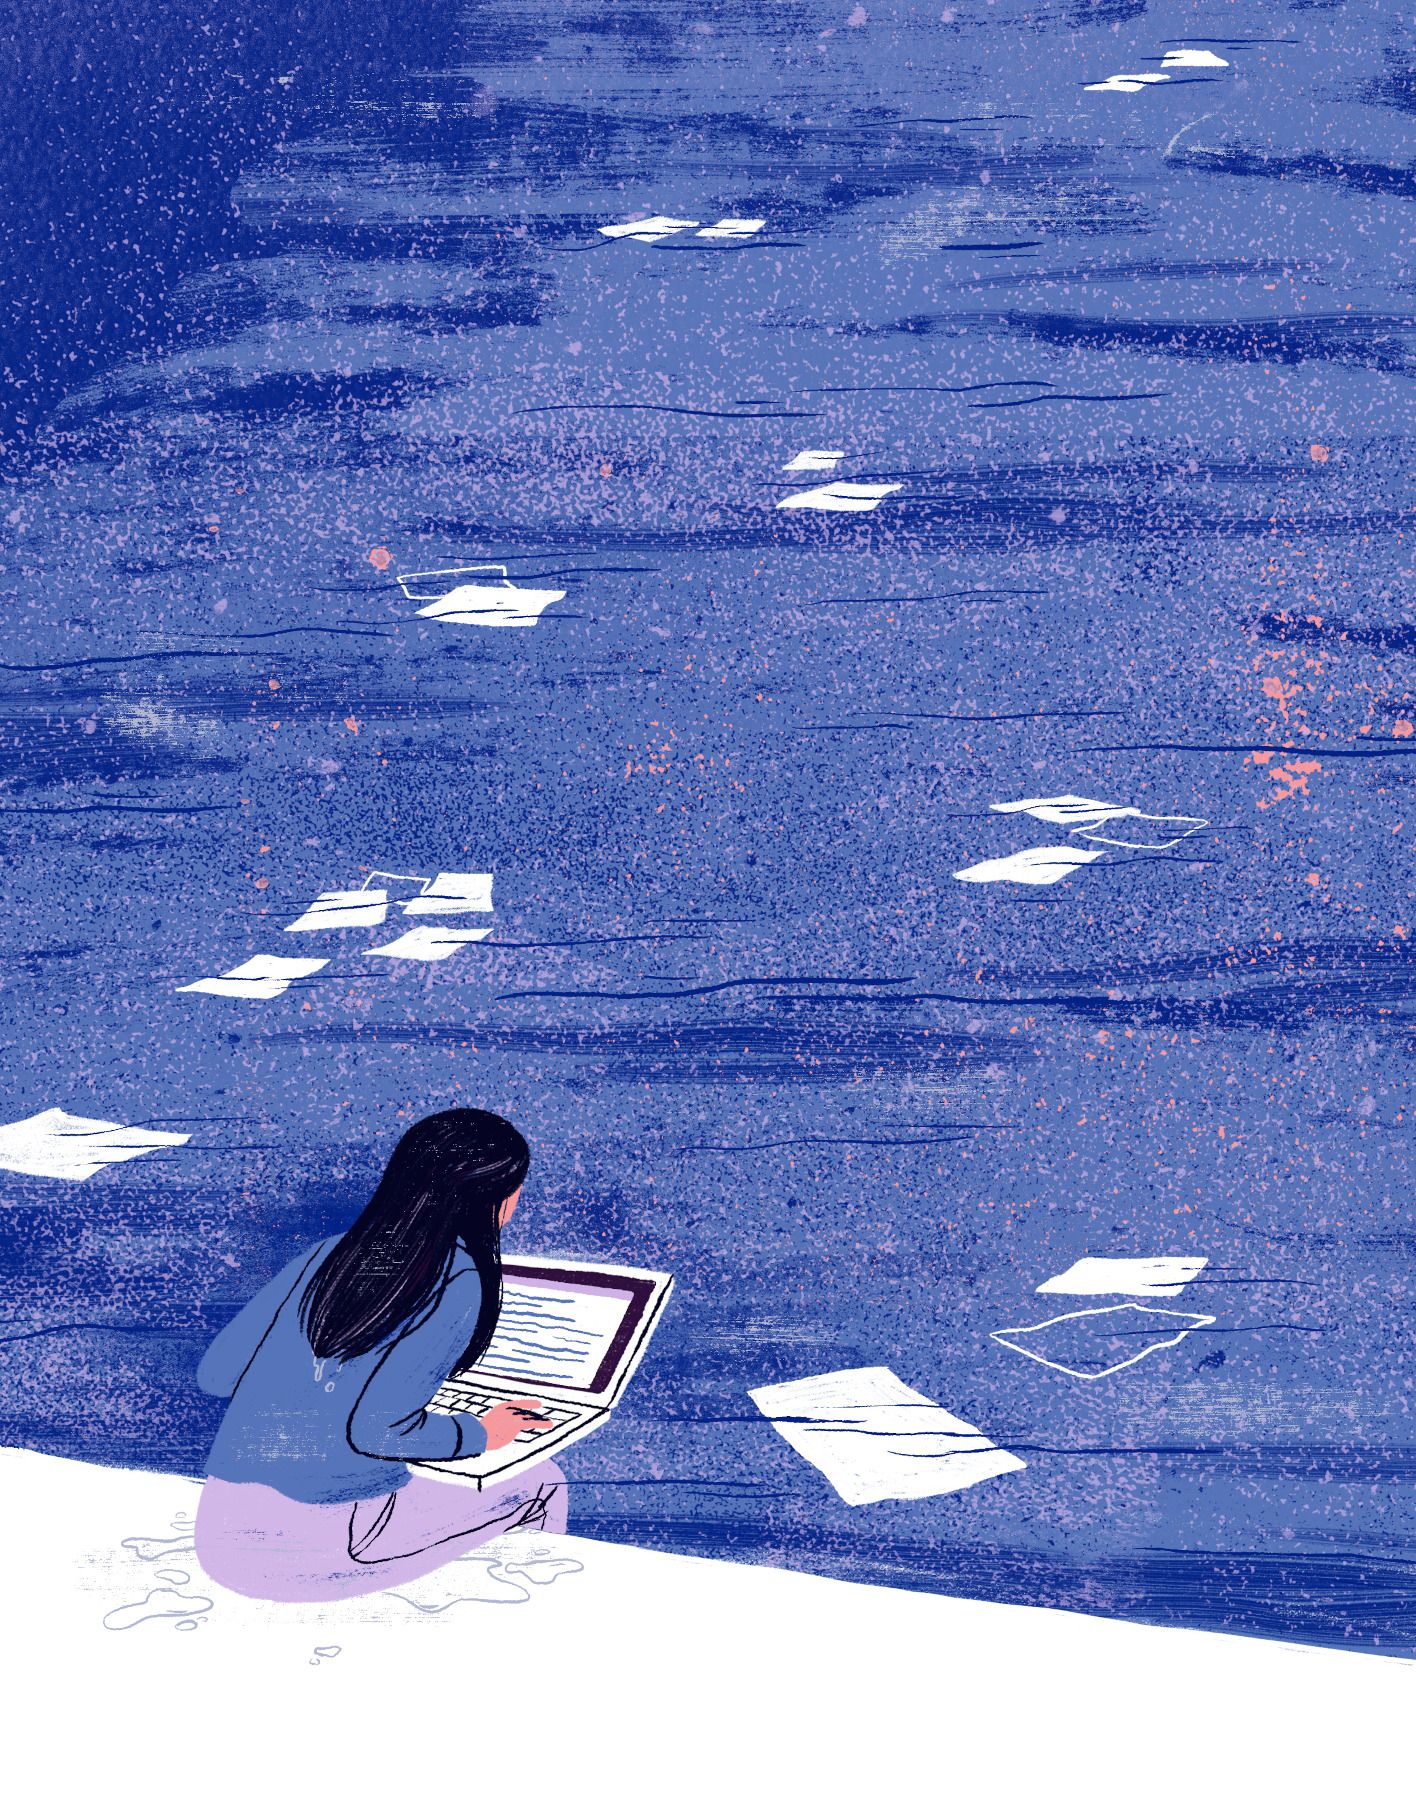 Illustration, hvor kvinde sidder ved en vandkant, På skødet har hun en laptop, mens vandet foran hende er fyldt med flydende dokumenter 